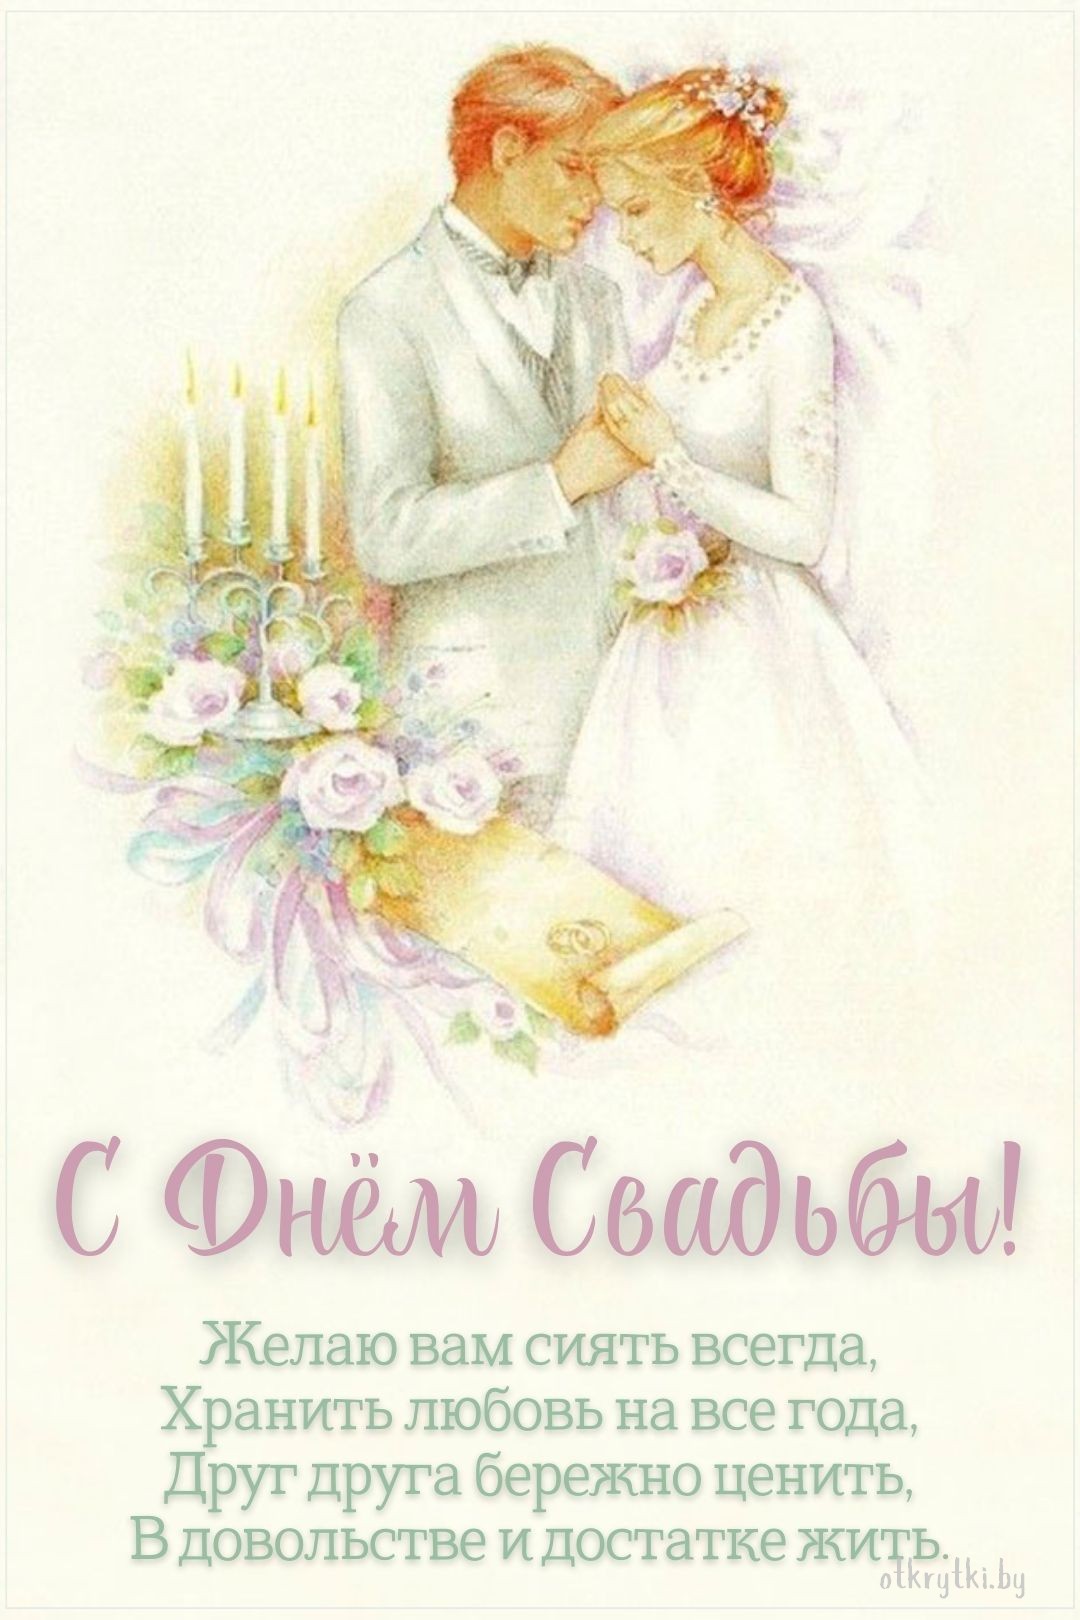 Красивая картинка с днем свадьбы в стихах